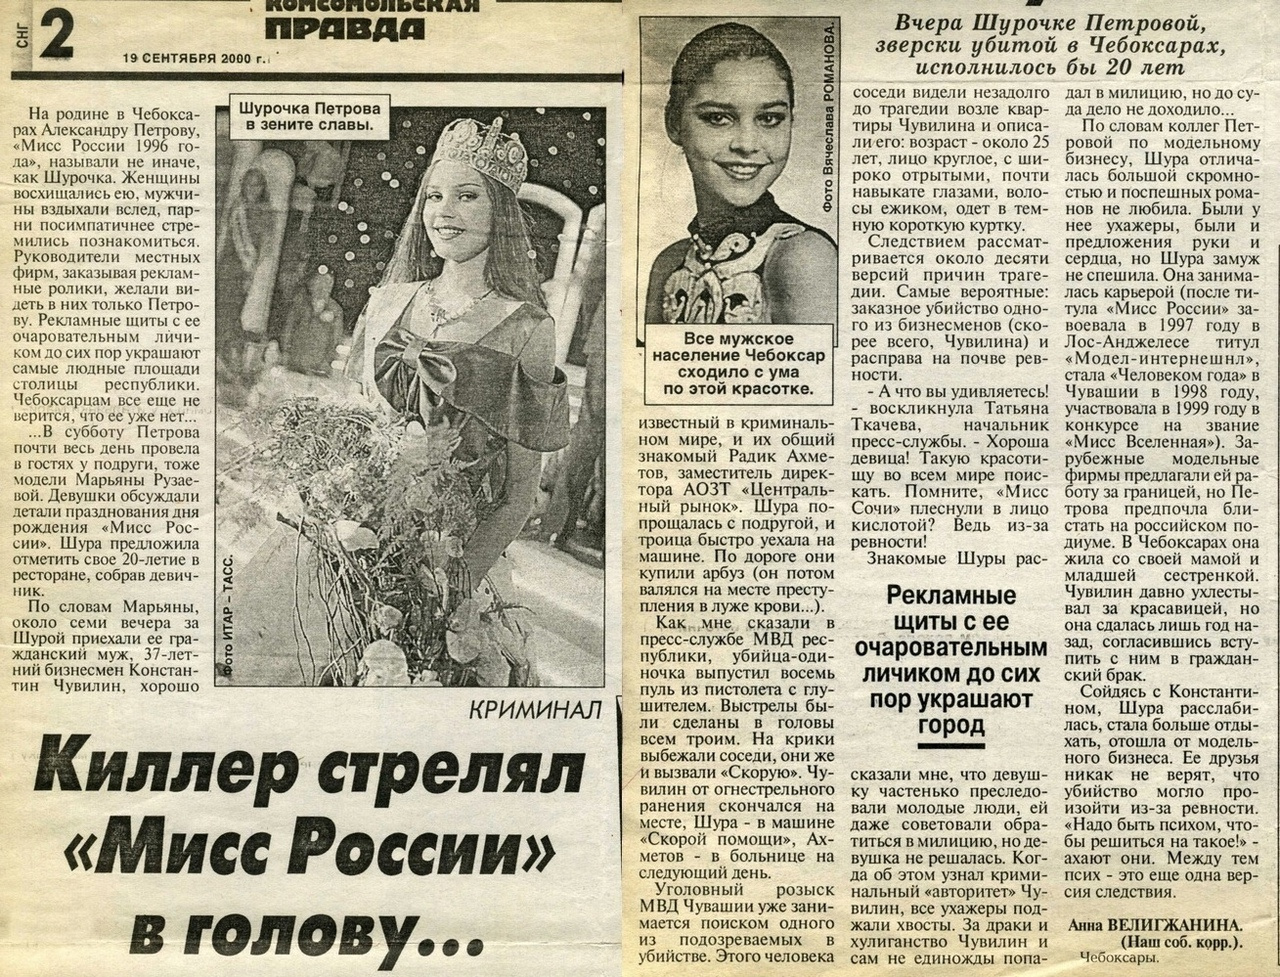 О смерти «Мисс Россия» писали в газетах